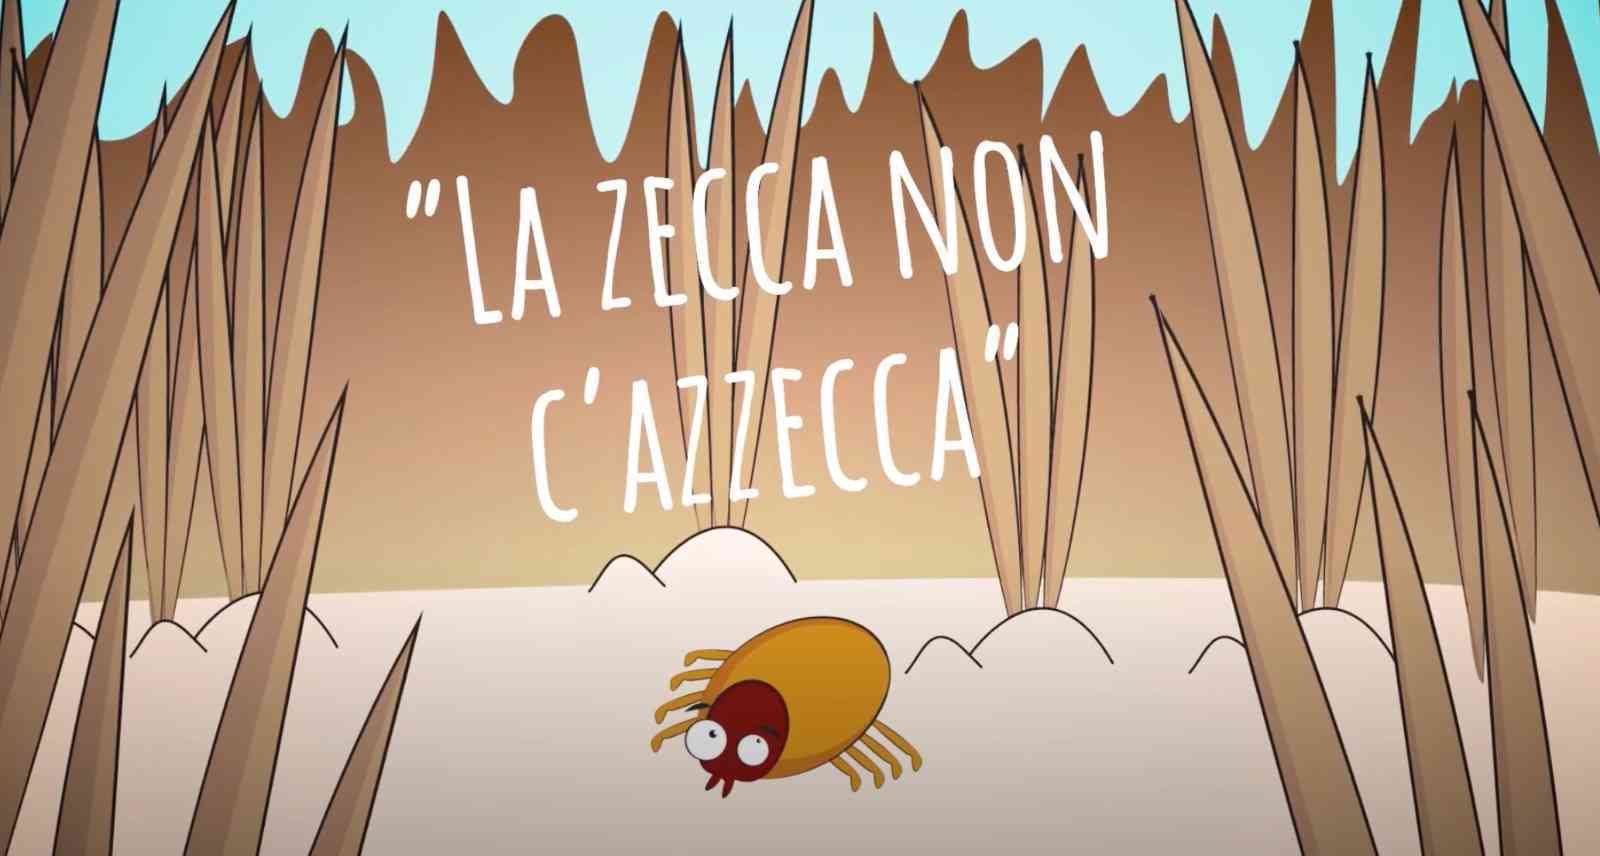 “La zecca non c'azzecca”: in un simpatico filmato i consigli per difendersi dai fastidiosi insetti (VIDEO)